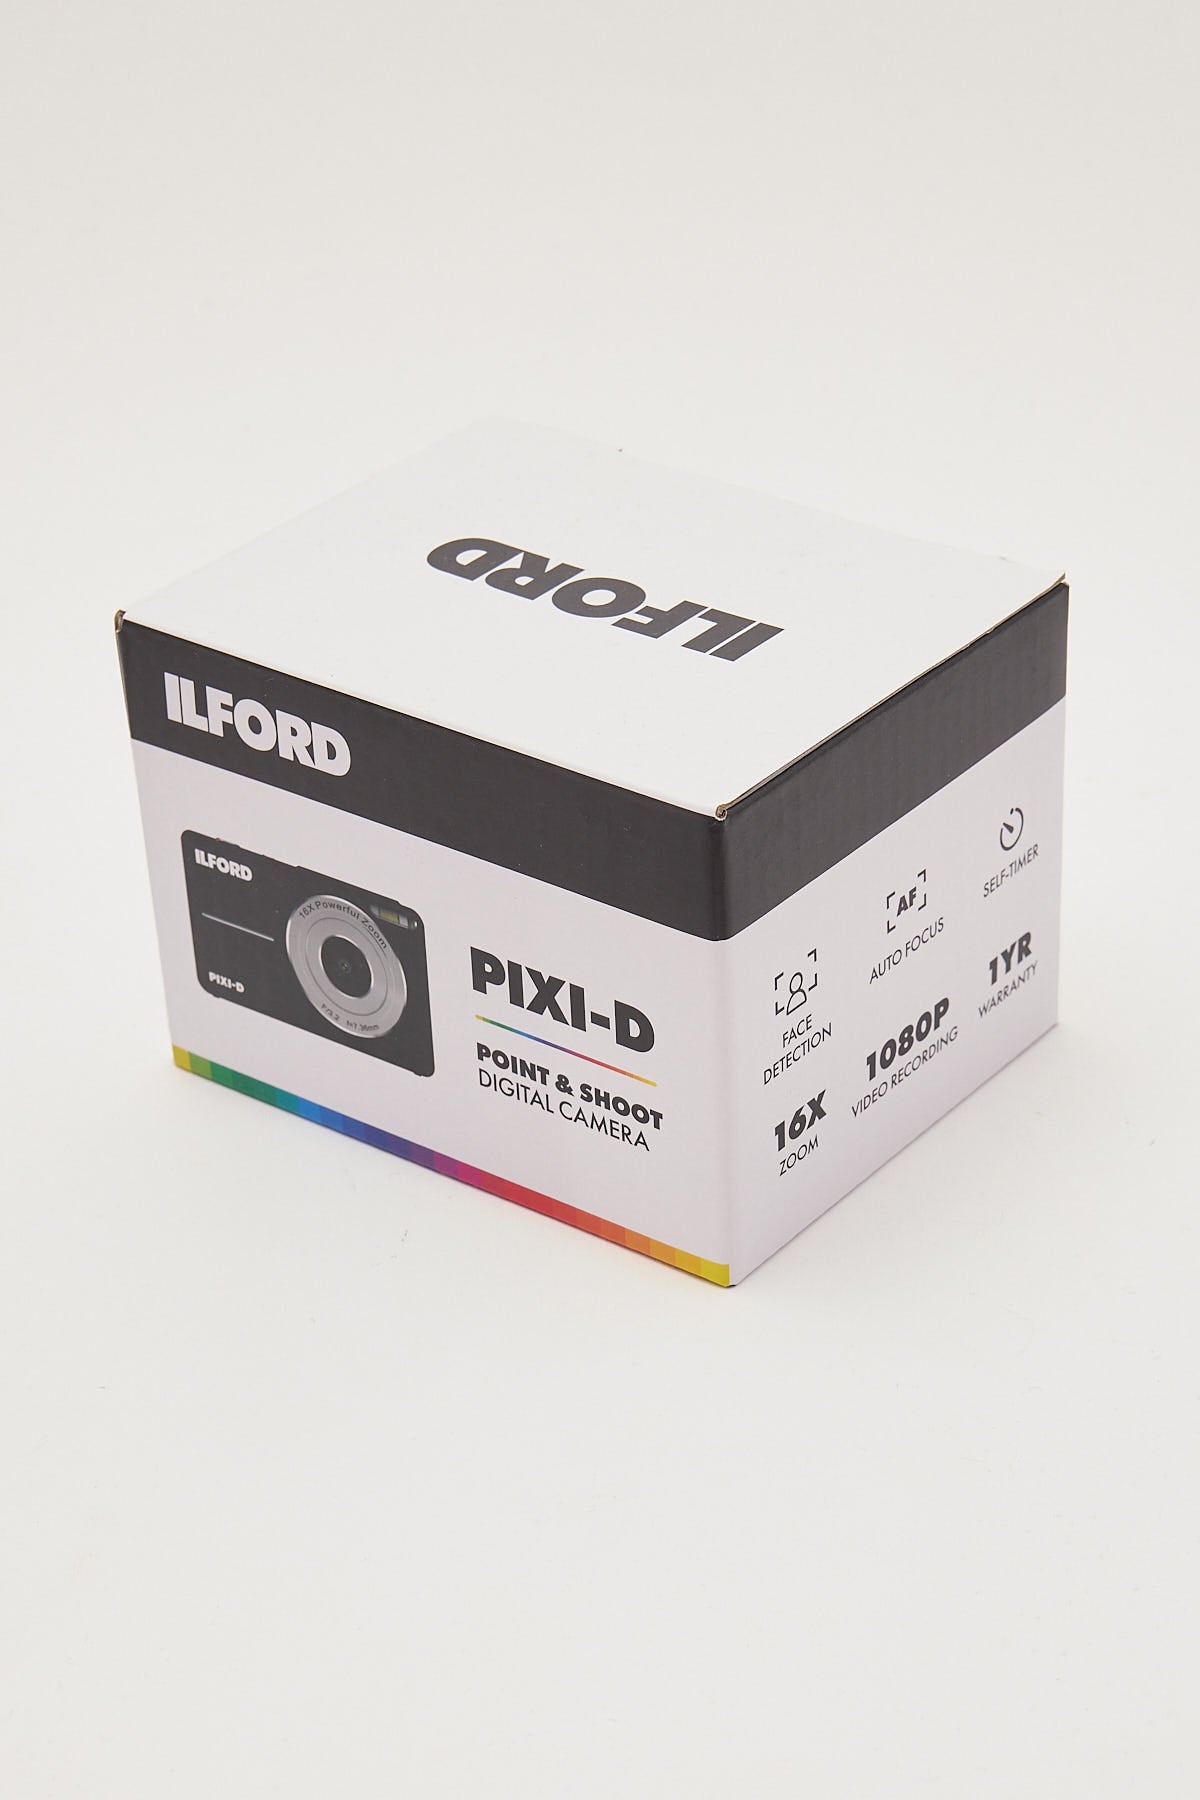 Ilford Pixi-D Compact Digital Camera Black